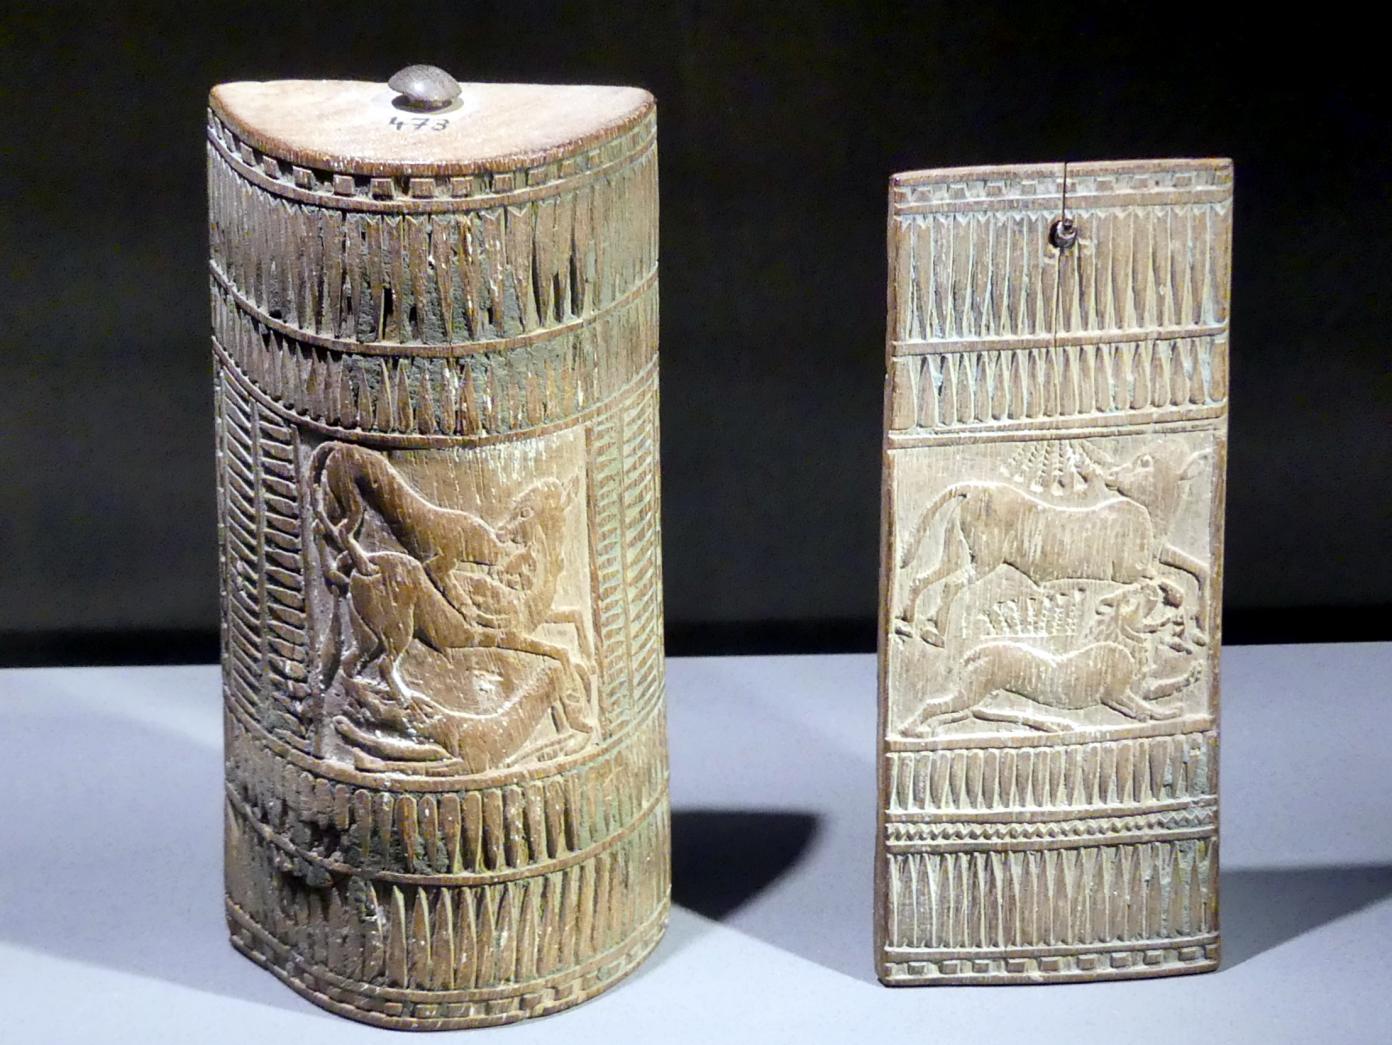 Kosmetikkästchen, 18. Dynastie, 1210 - 966 v. Chr., 1350 v. Chr.